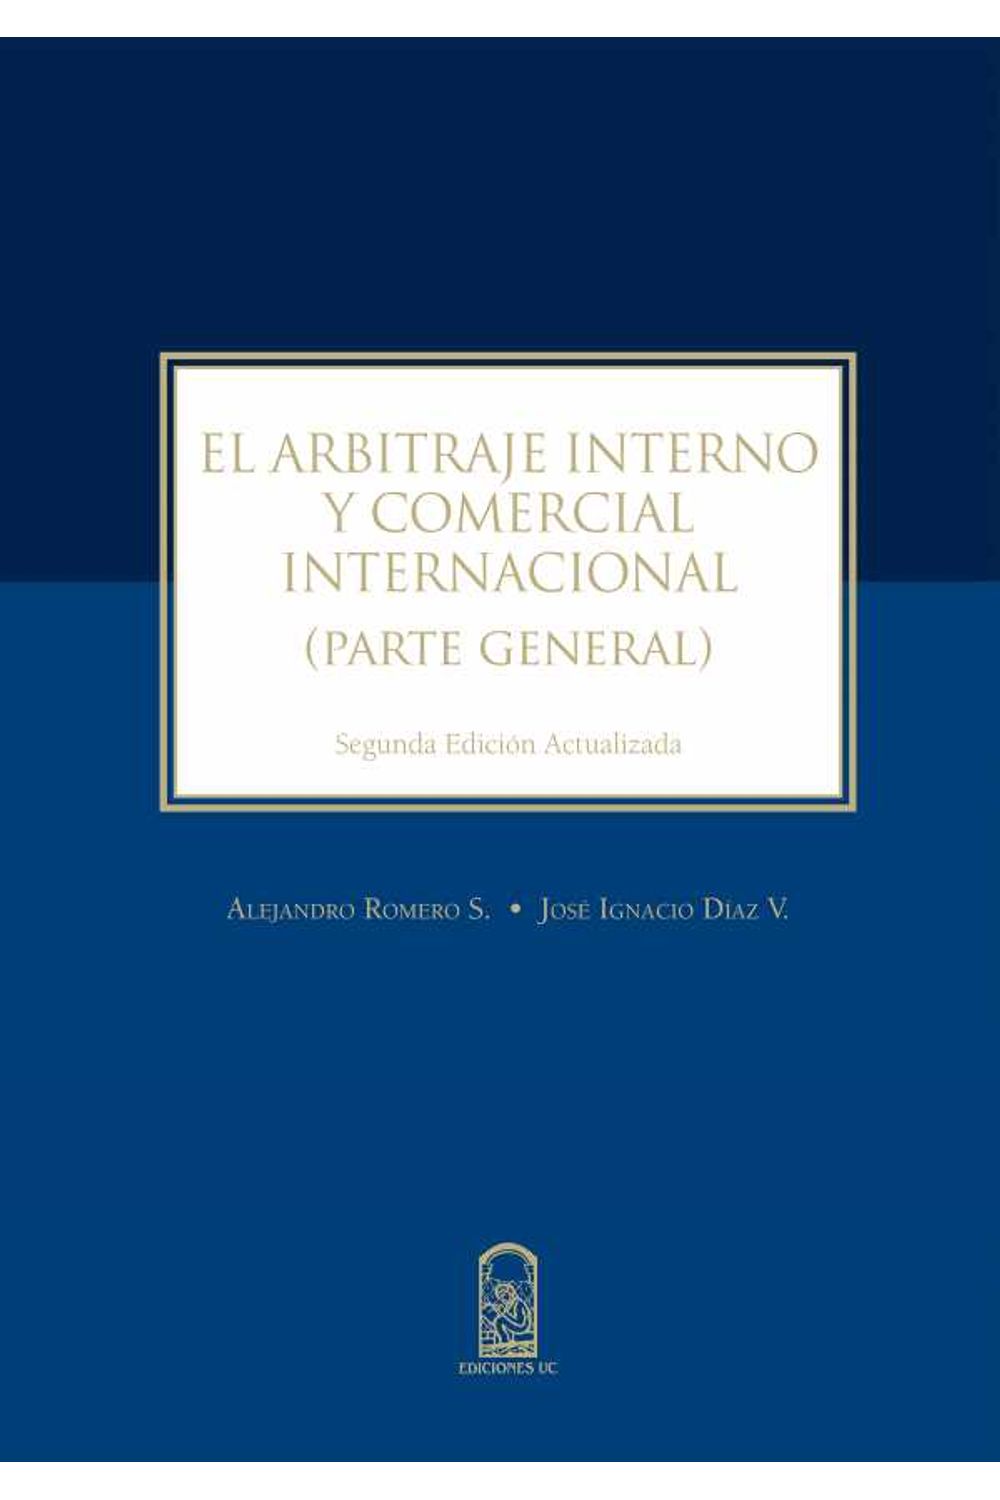 bw-el-arbitraje-interno-y-comercial-ediciones-uc-9789561426696